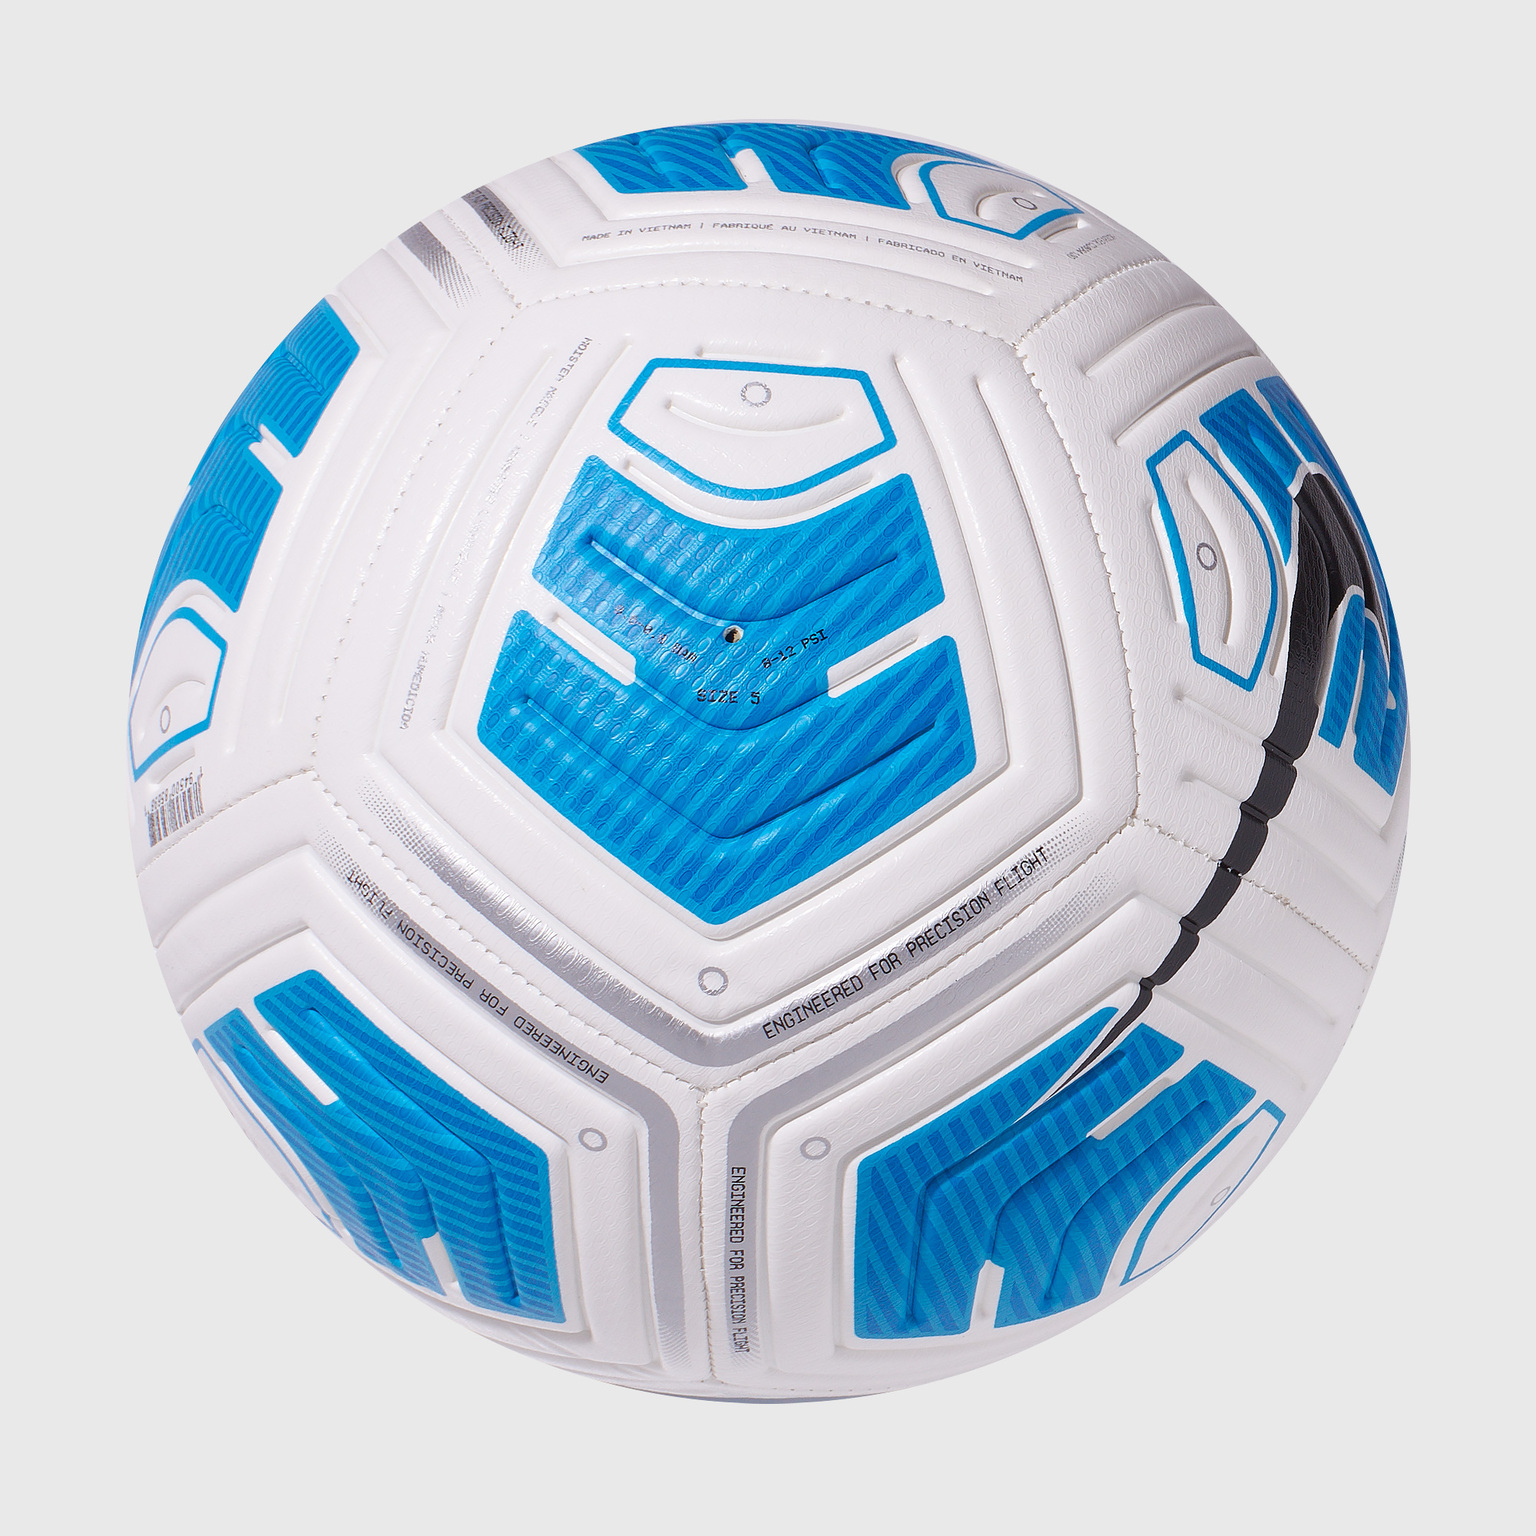 Футбольный мяч Nike Strike Team 350G CU8064-100